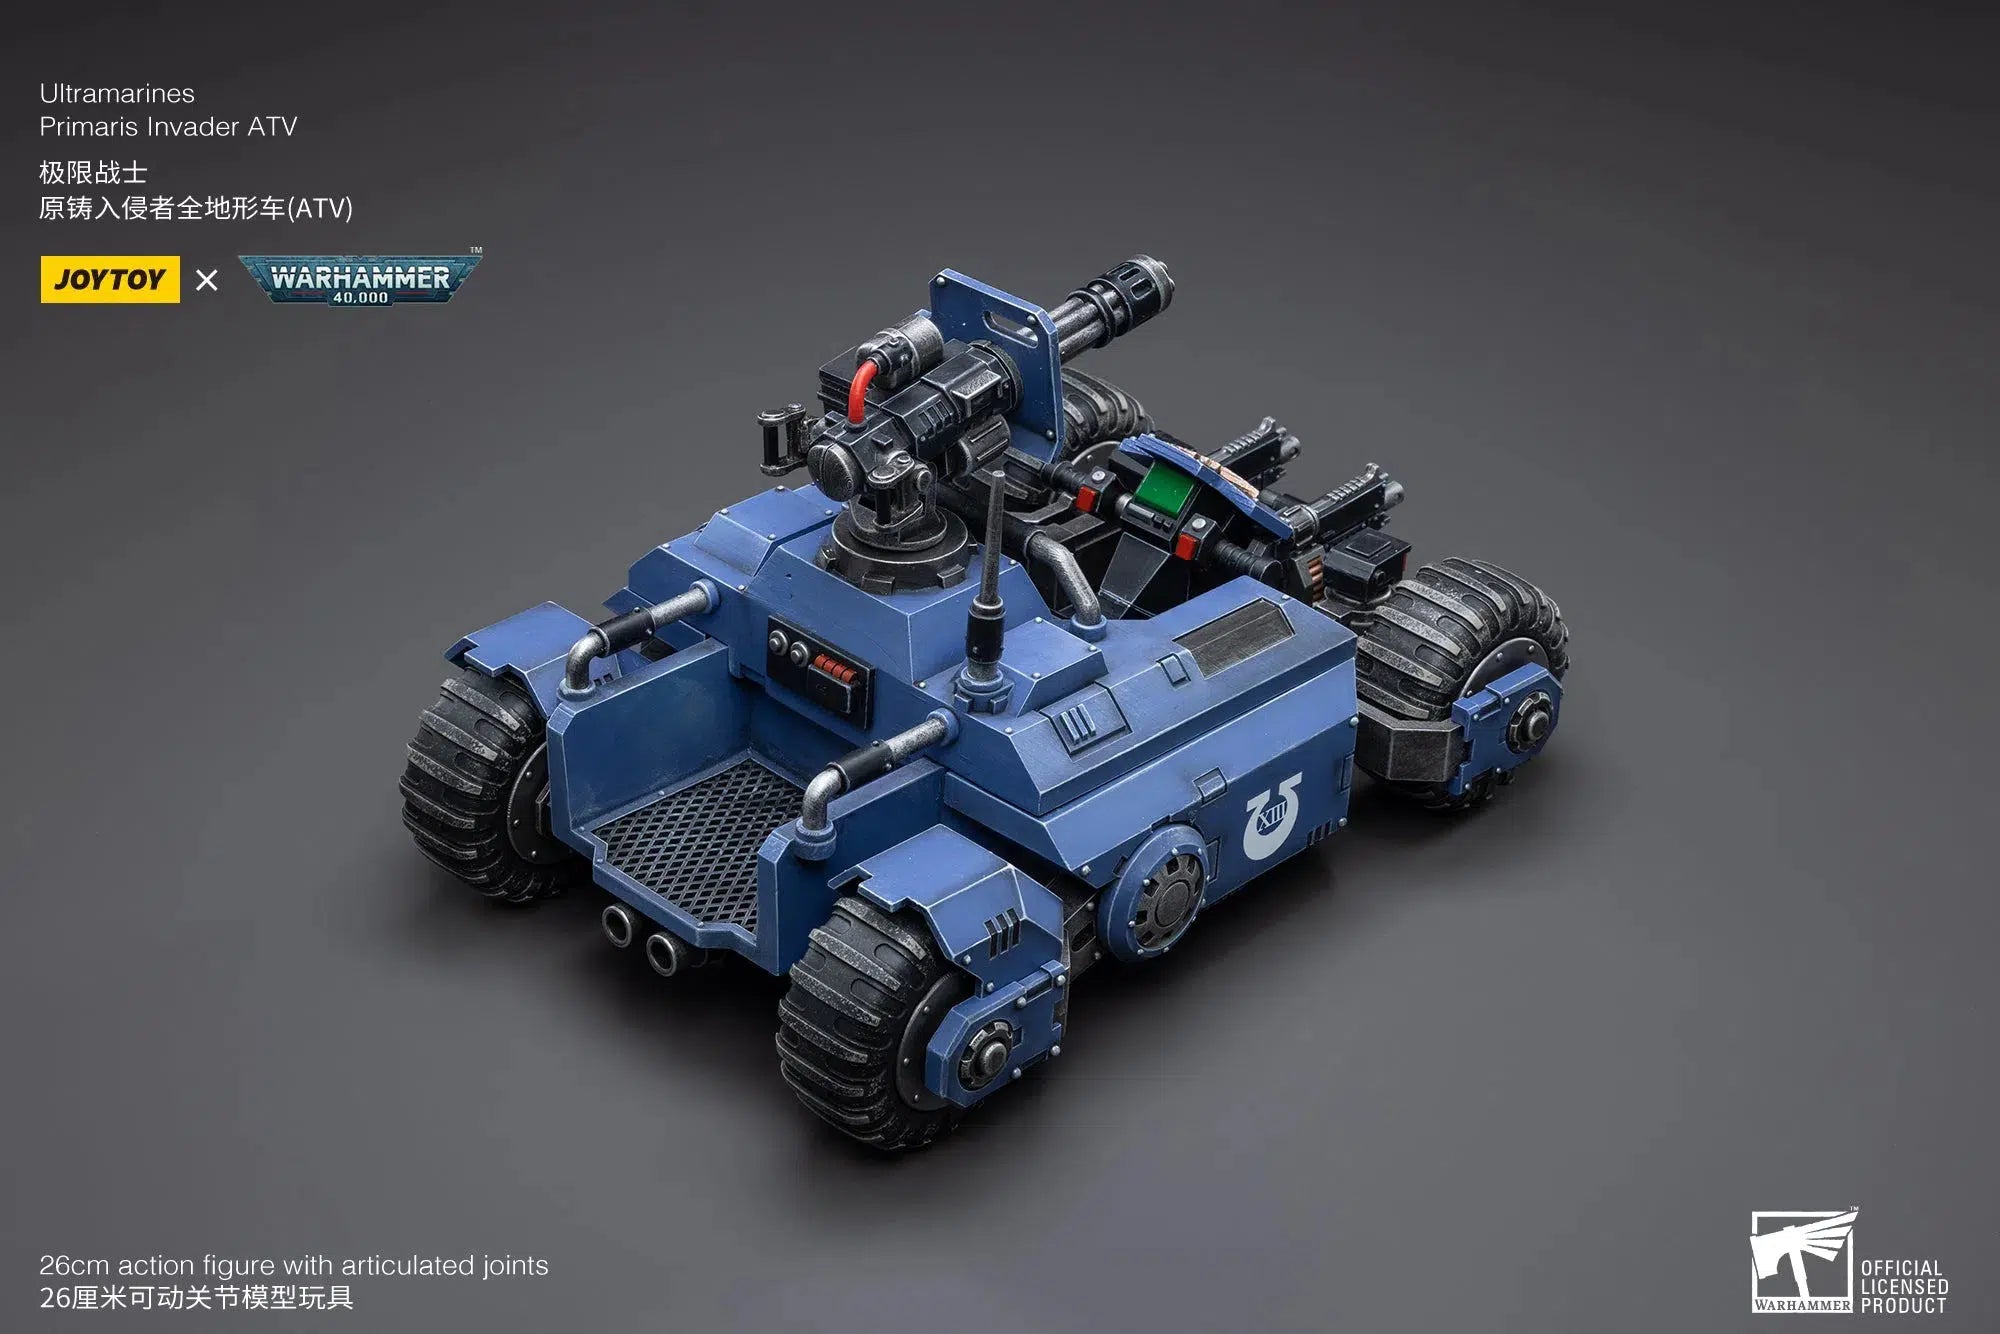 Warhammer 40K: Ultramarines Primaris Invader ATV: Joy Toy